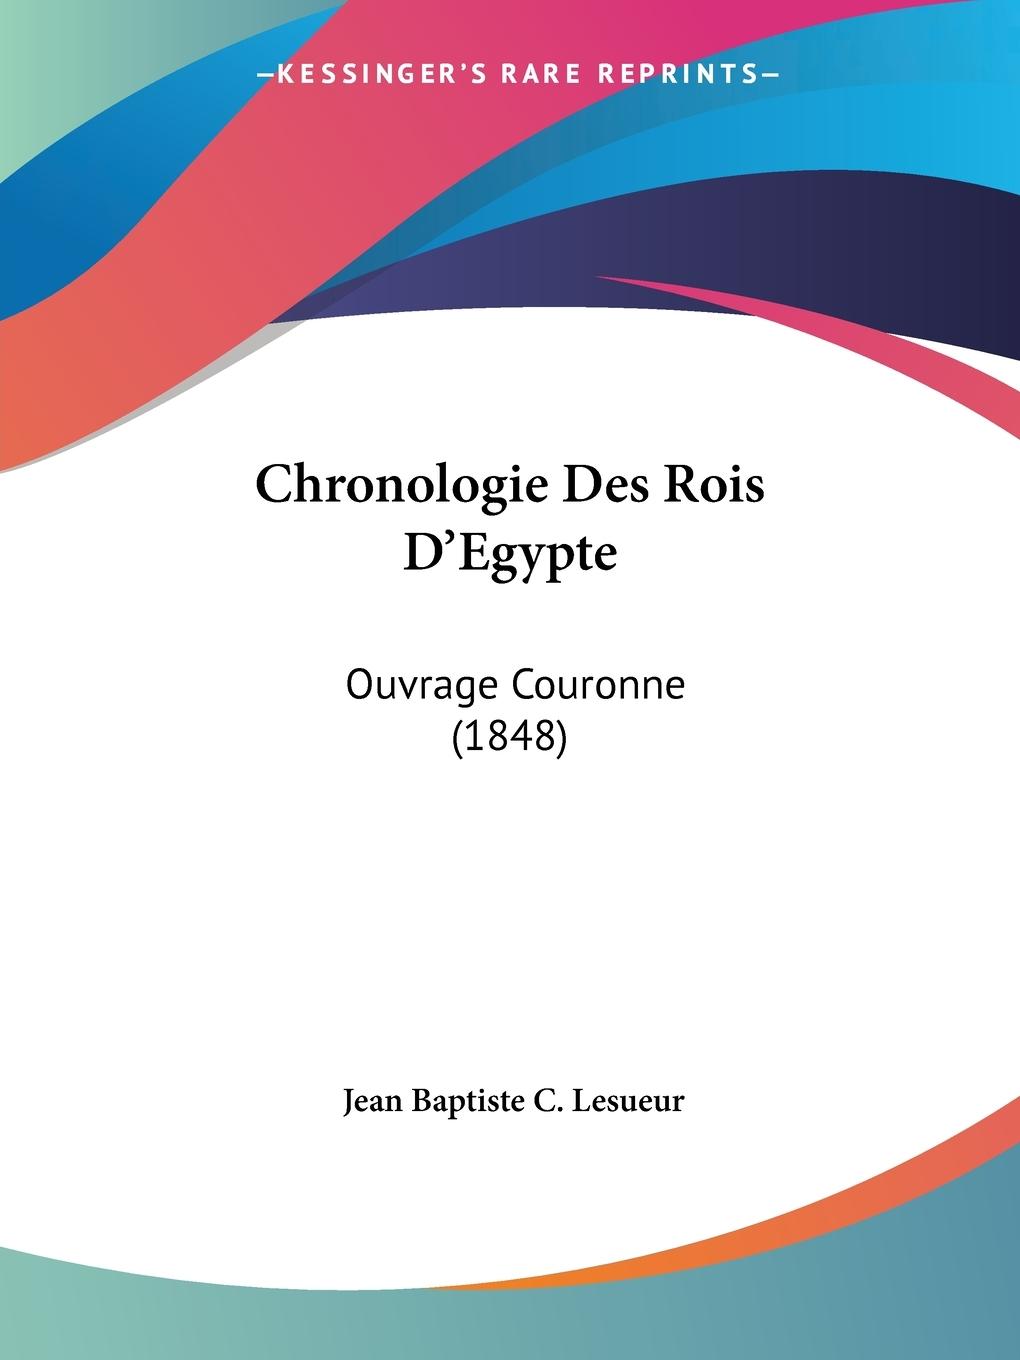 Chronologie Des Rois D Egypte - Lesueur, Jean Baptiste C.